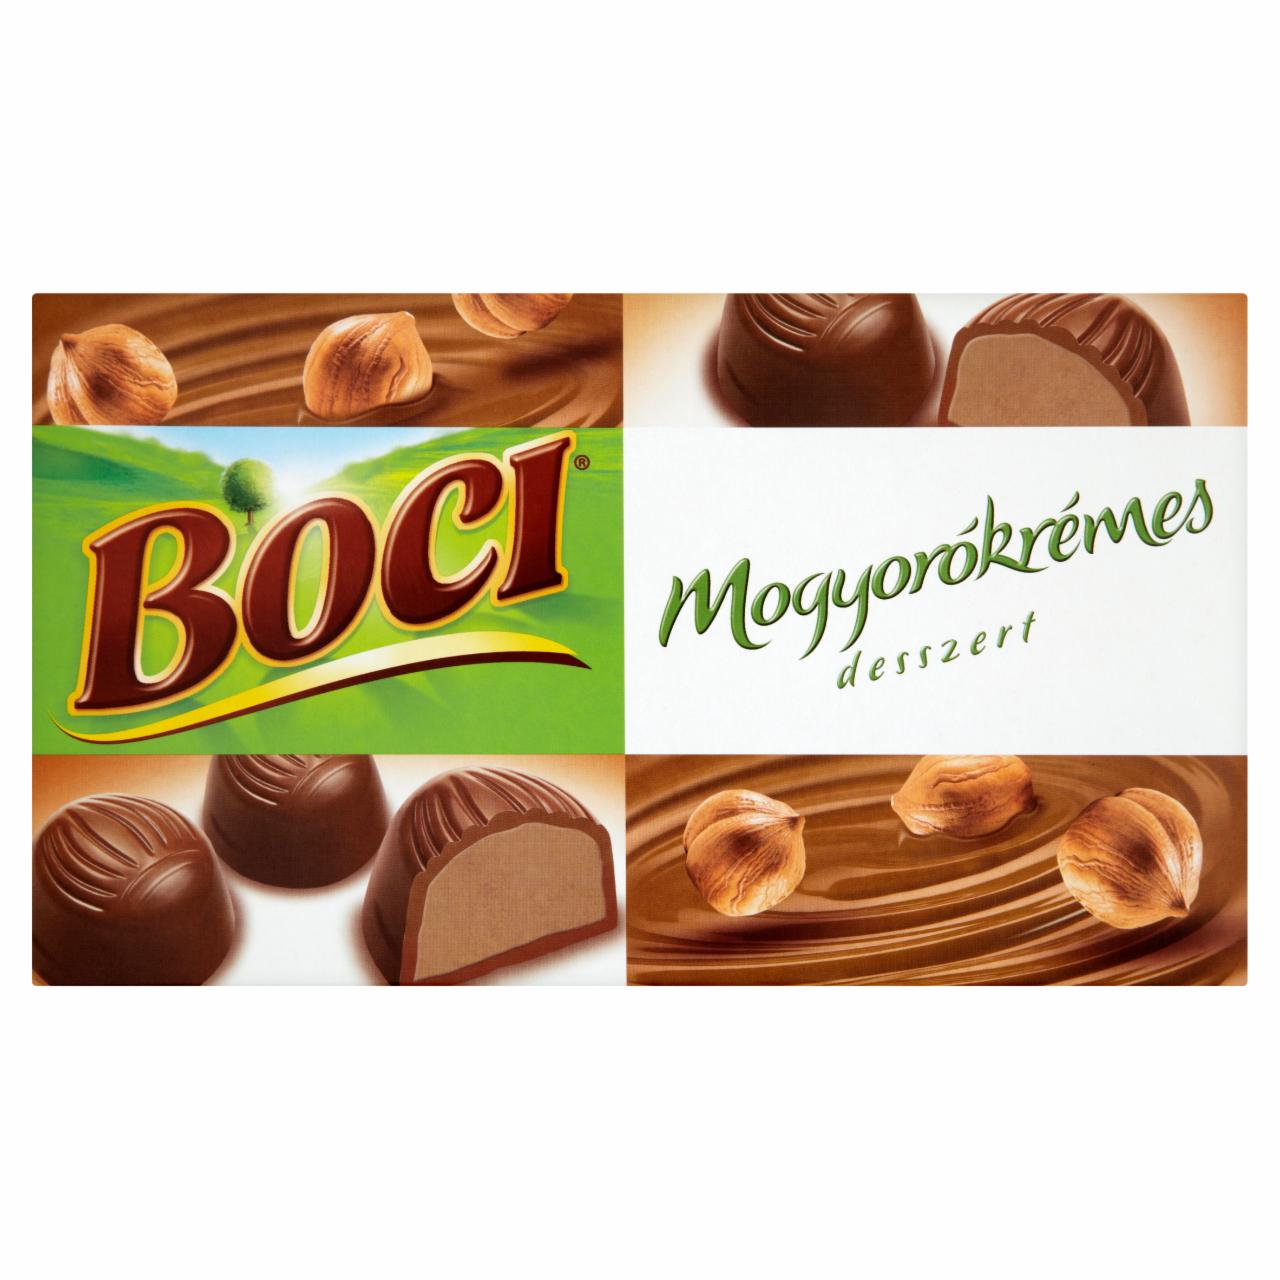 Képek - Boci mogyorókrémes desszert 100 g